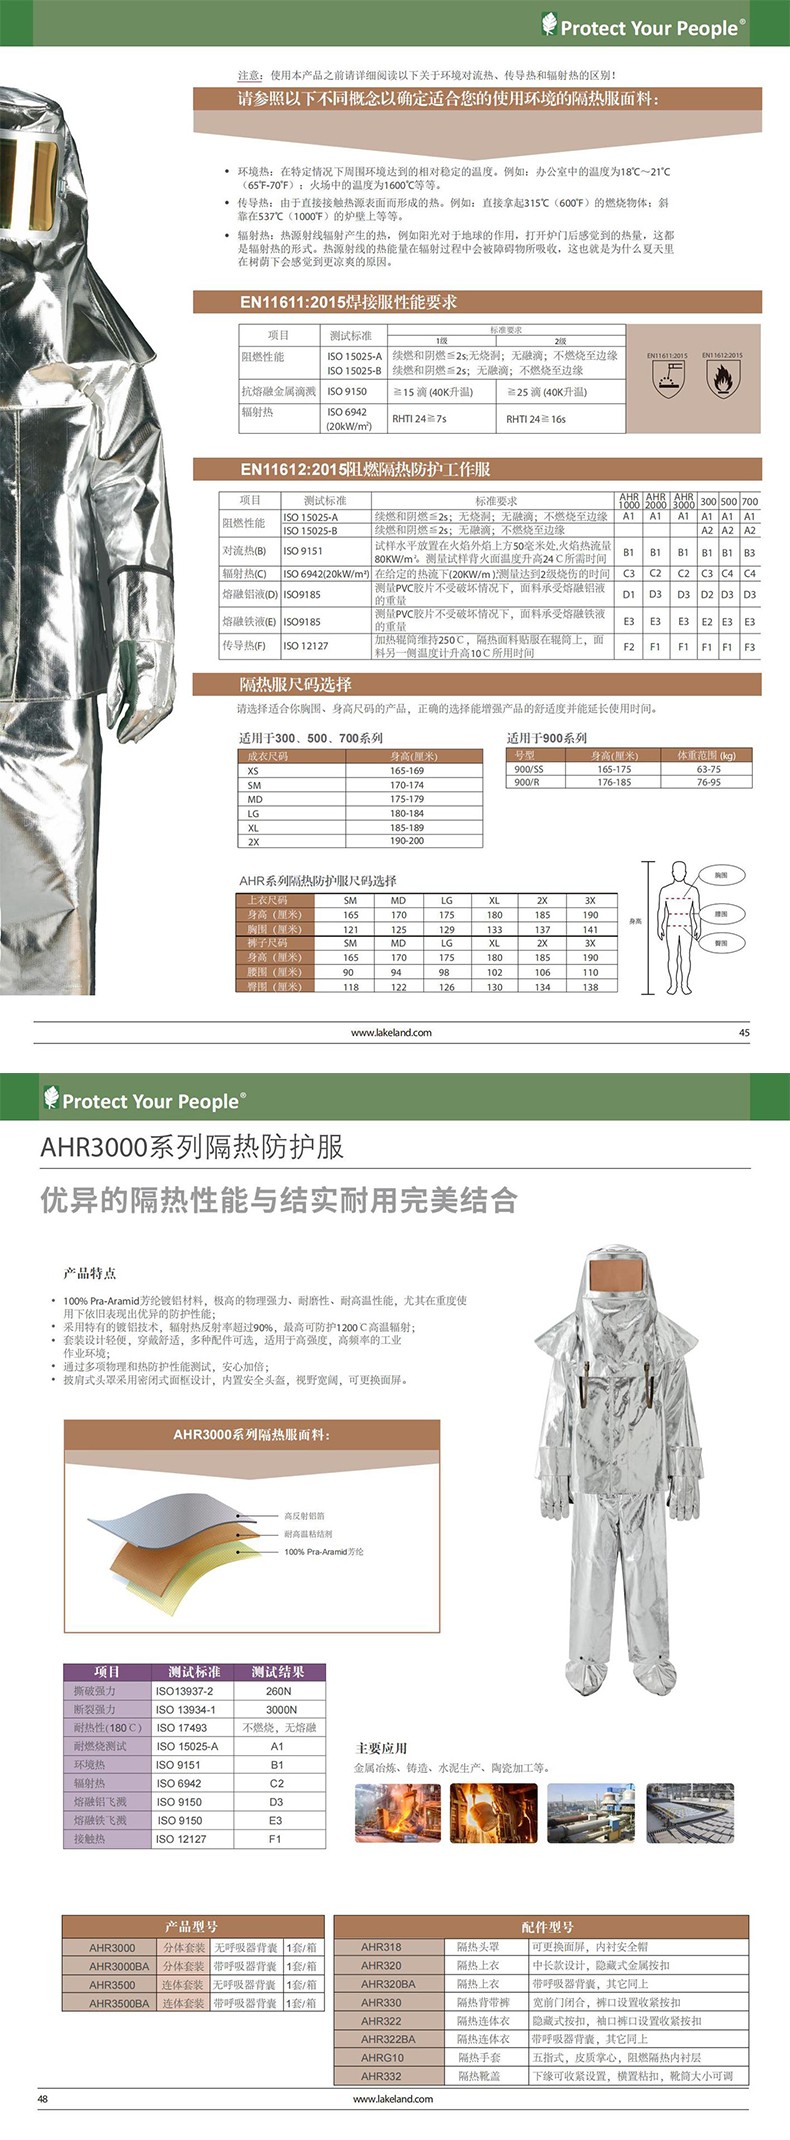 雷克兰AHR322芳纶镀铝连体式隔热服图片